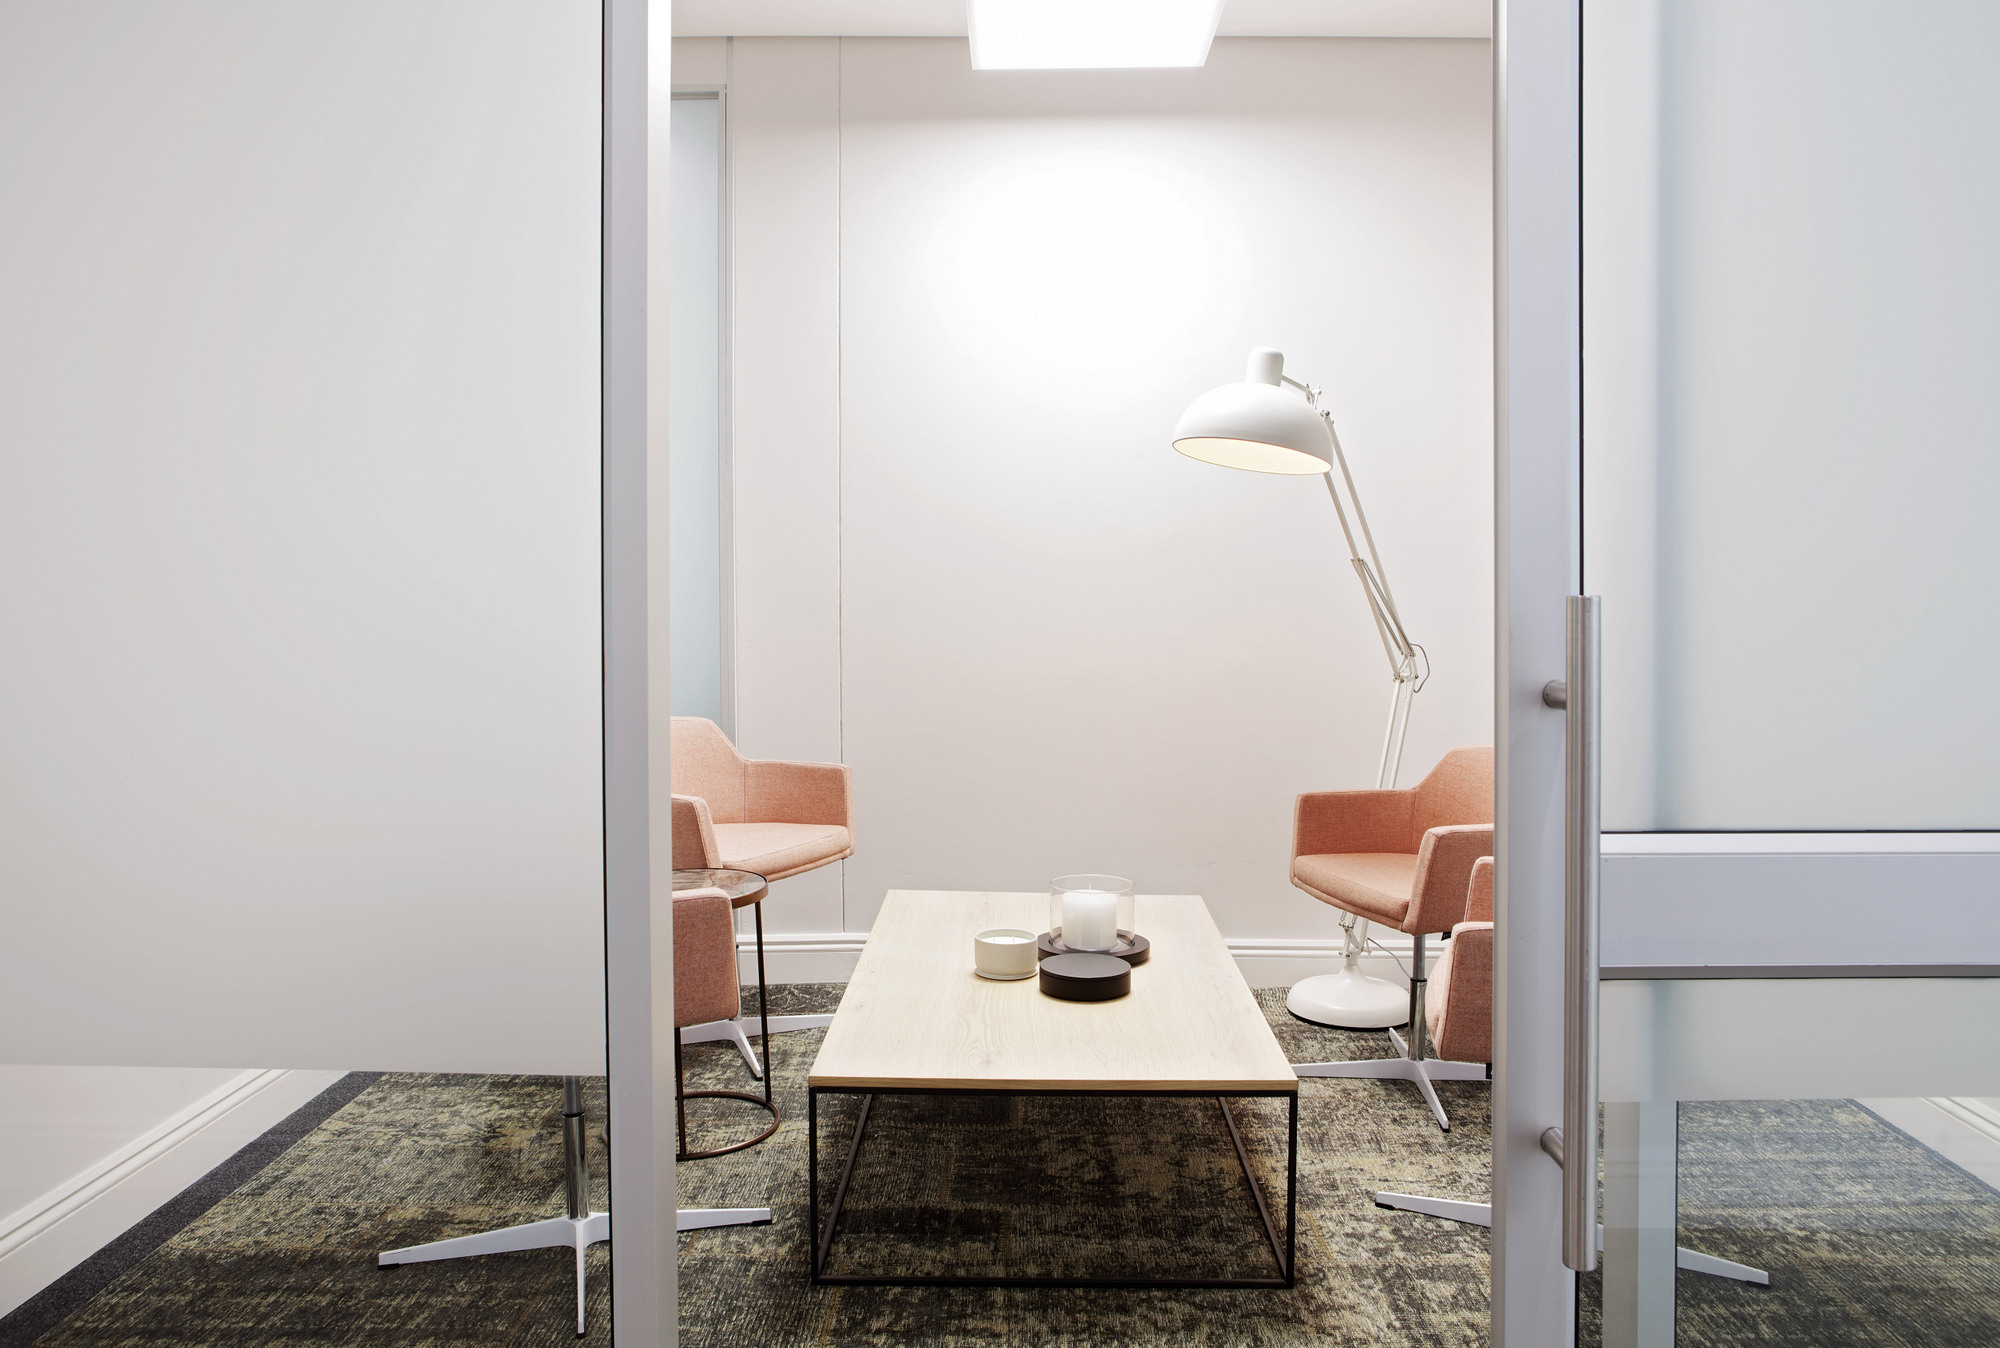 图片[8]|Seriti办事处——约翰内斯堡|ART-Arrakis | 建筑室内设计的创新与灵感